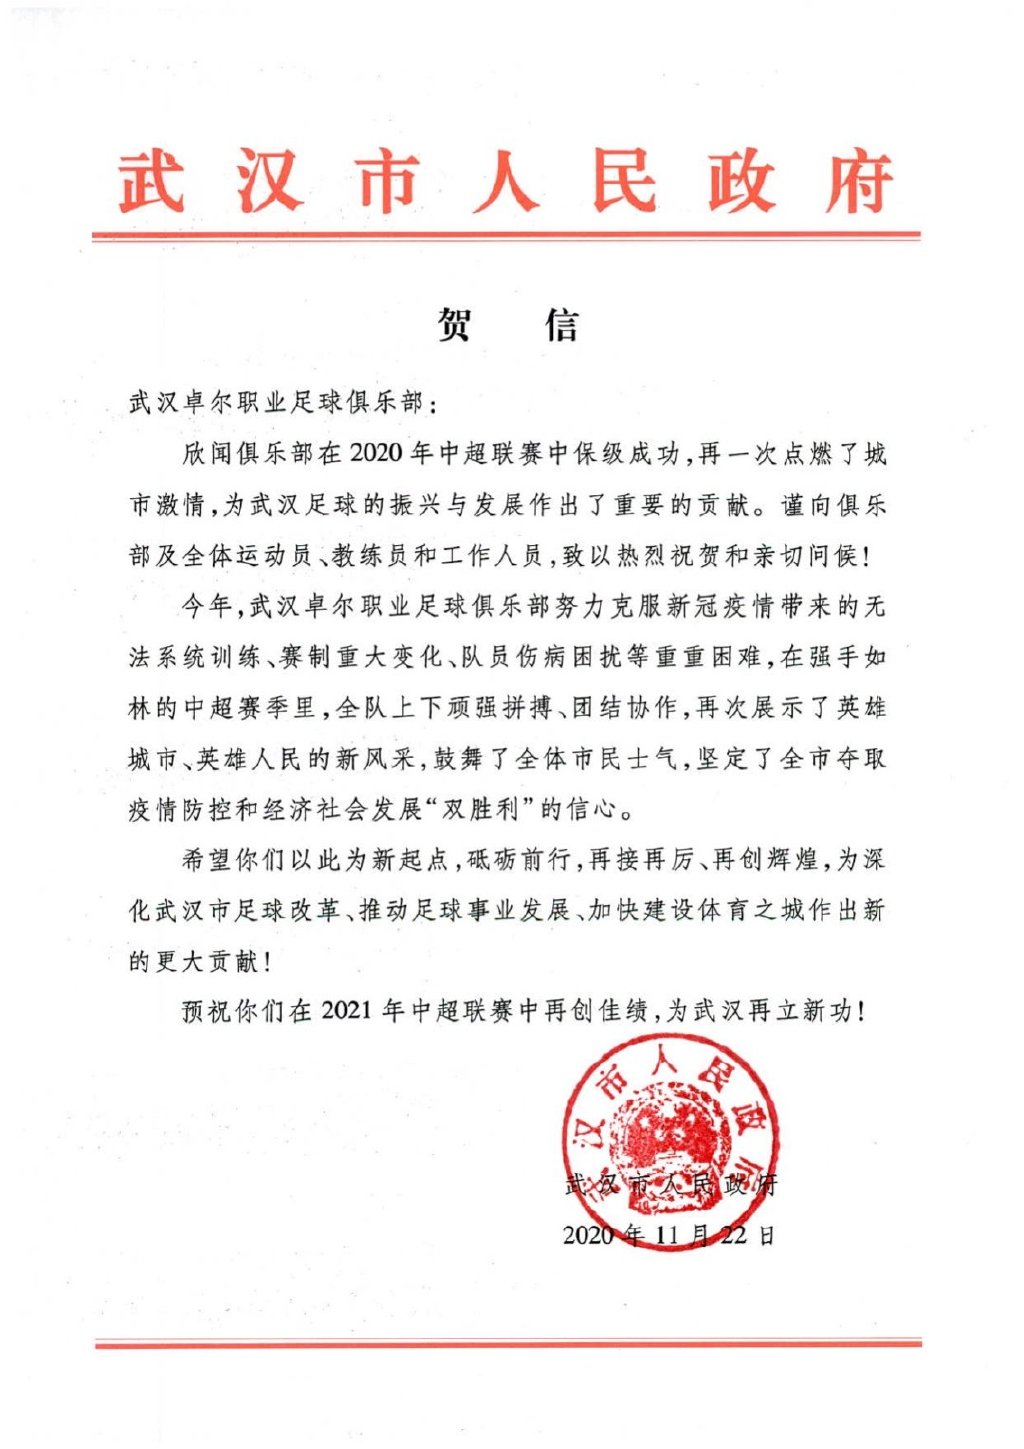 武汉市政府和体育局祝贺卓尔保级 希望再接再厉_贡献